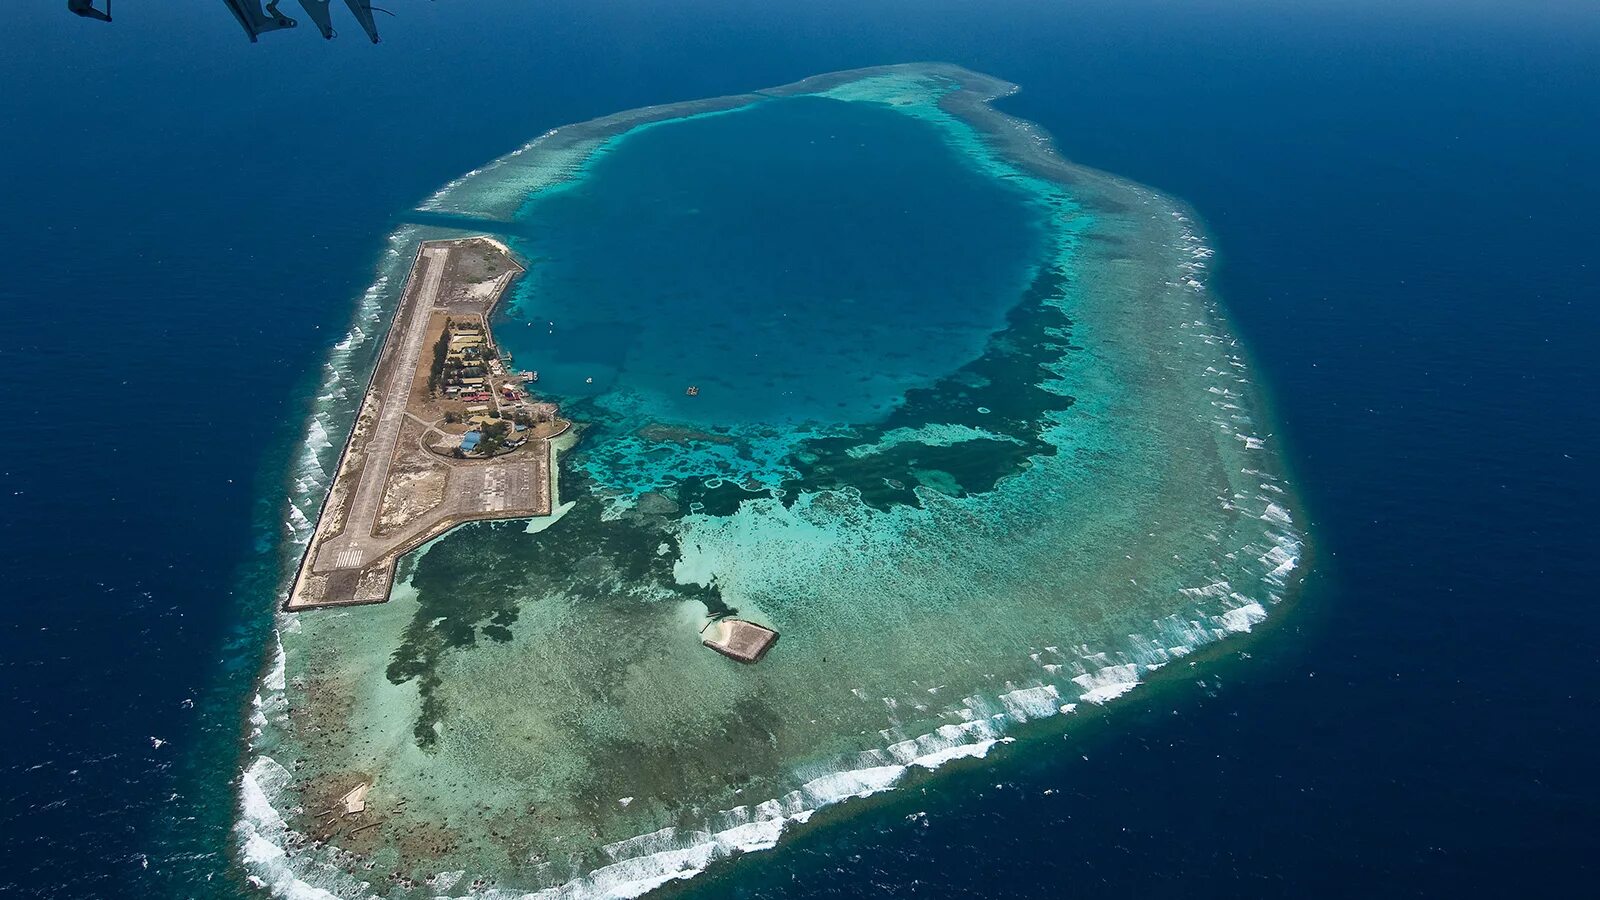 Стране принадлежит самый большой в мире остров. Архипелаг Спратли. Лаянг Лаянг остров. Острова Спратли в Южно-китайском море. Архипелаг Спратли и Парасельские острова.